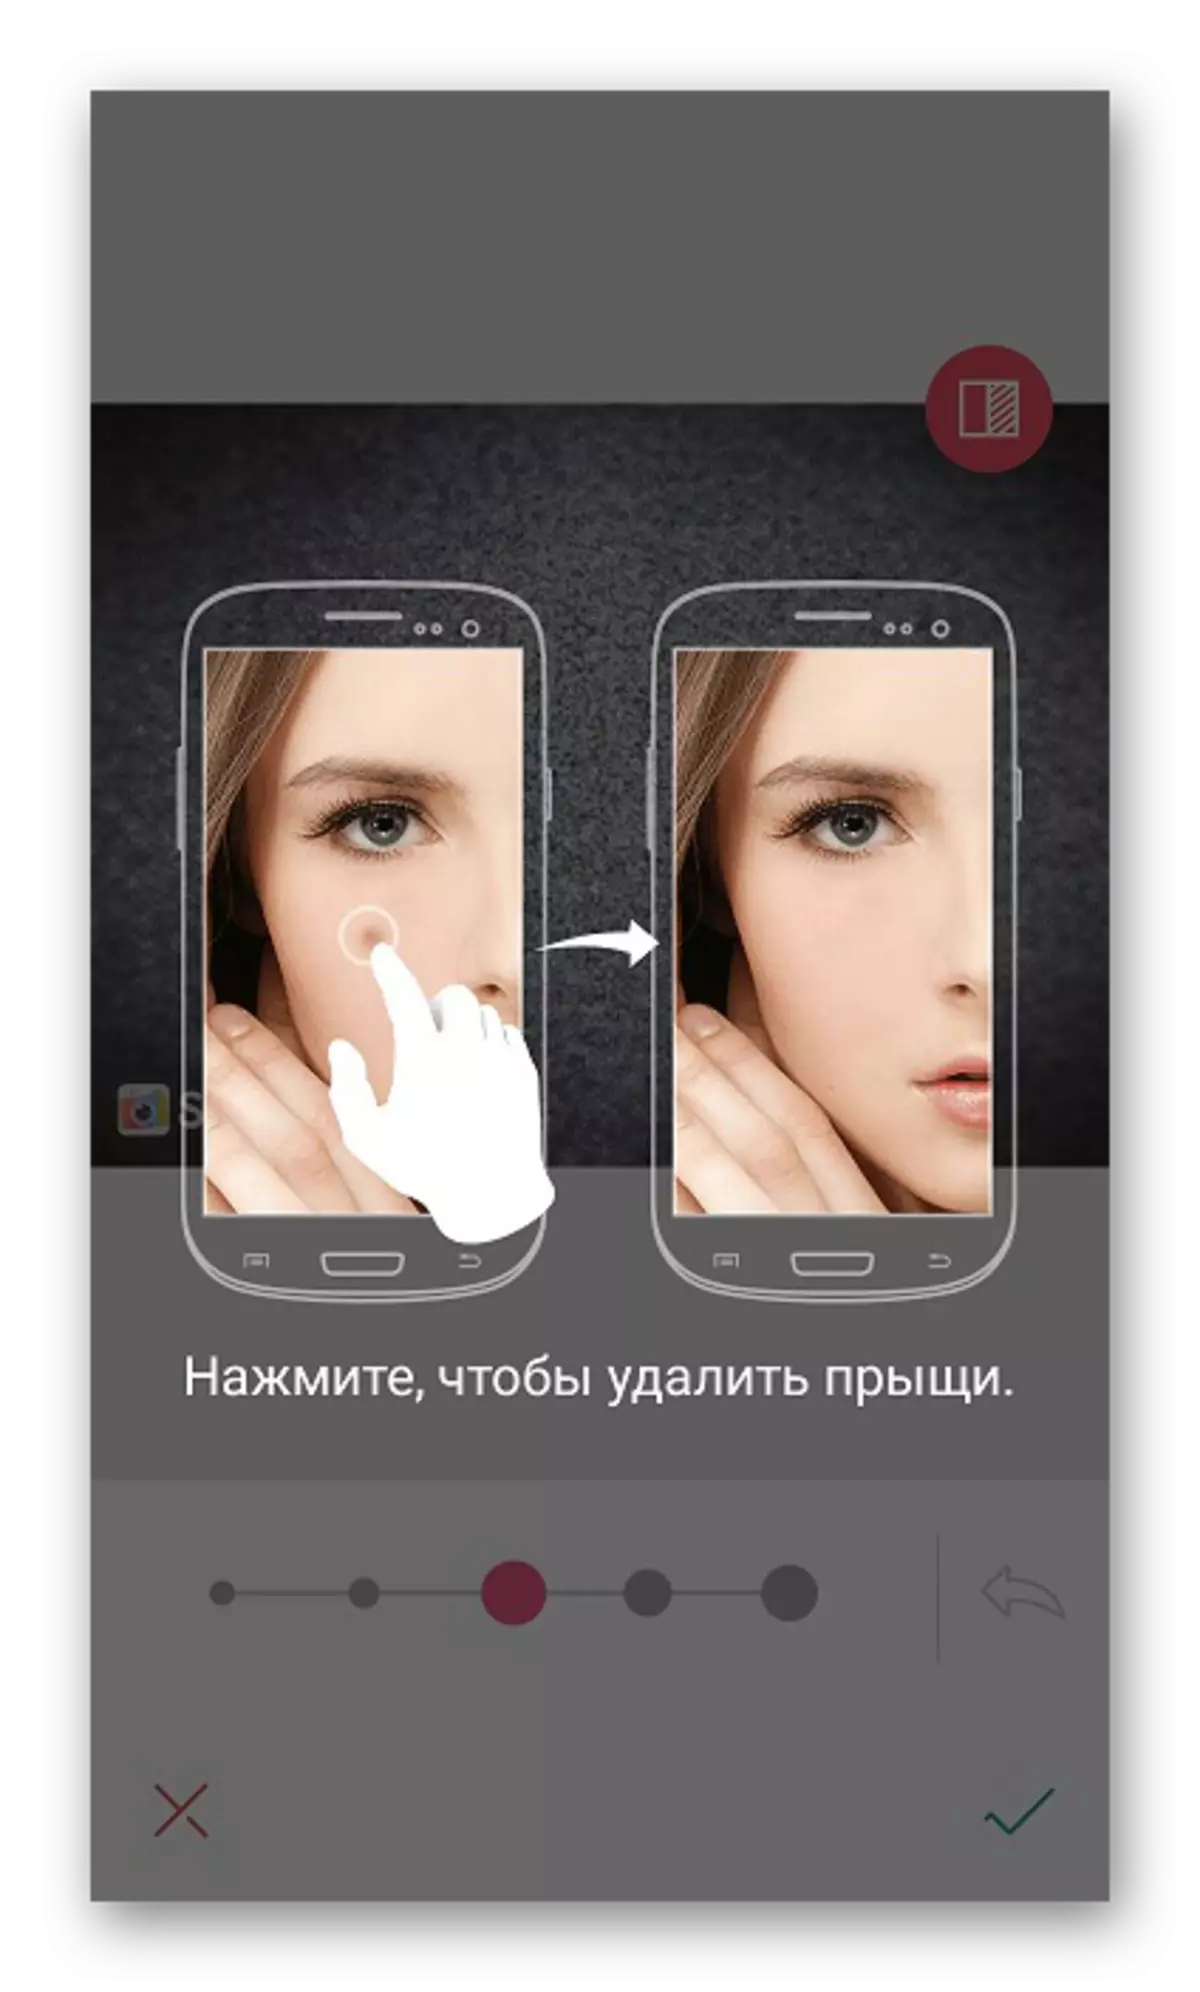 Selfie360 இல் சுத்திகரிப்பு செயல்பாடு செயல்படும்